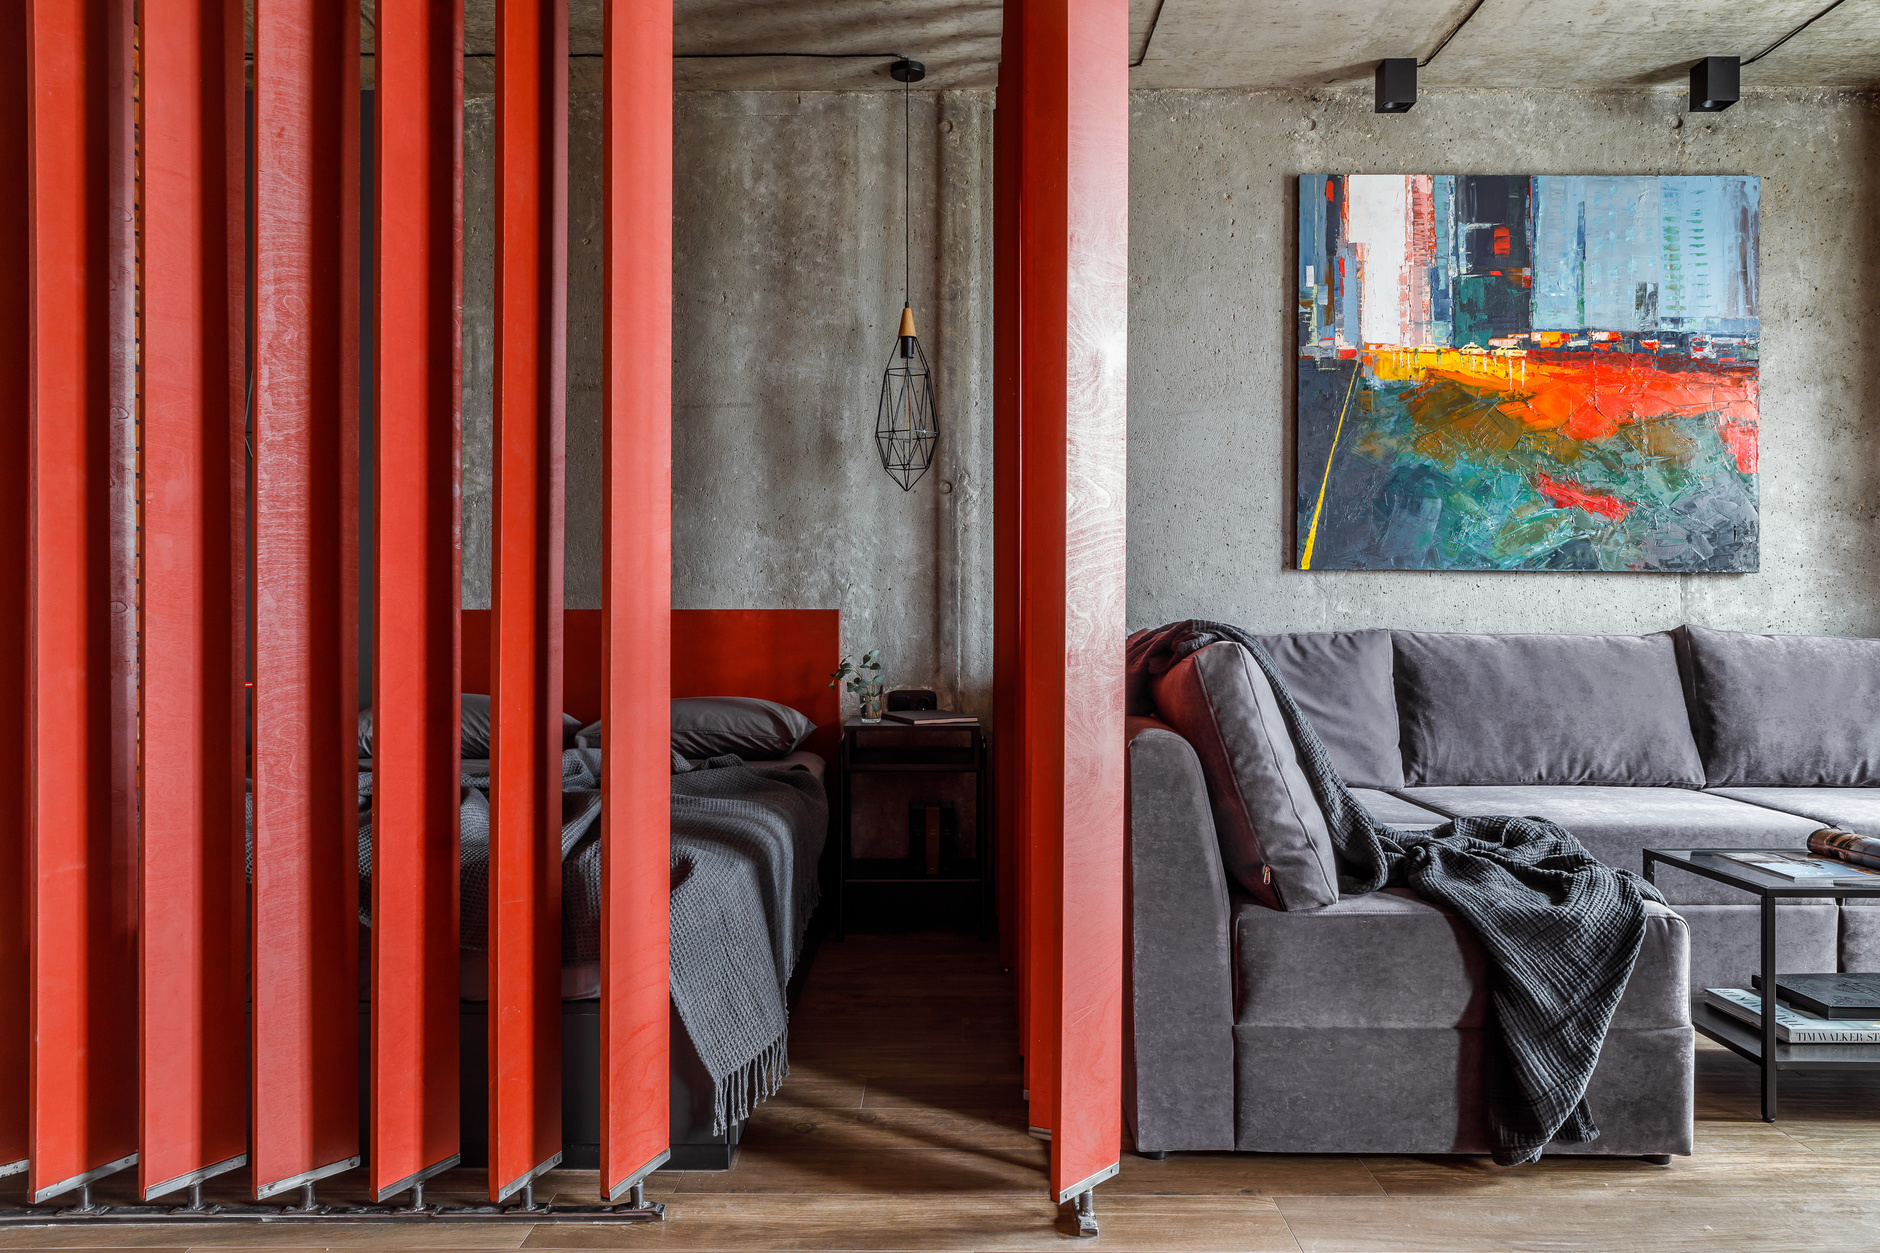 Căn hộ nhỏ thiết kế theo phong cách công nghiệp với sàn lát gỗ mộc, trần và tường bê tông thô, trong đó phòng ngủ được phân vùng bằng những thanh ván ép dọc xoay 360 độ cá tính với sắc đỏ cực kỳ nổi bật.